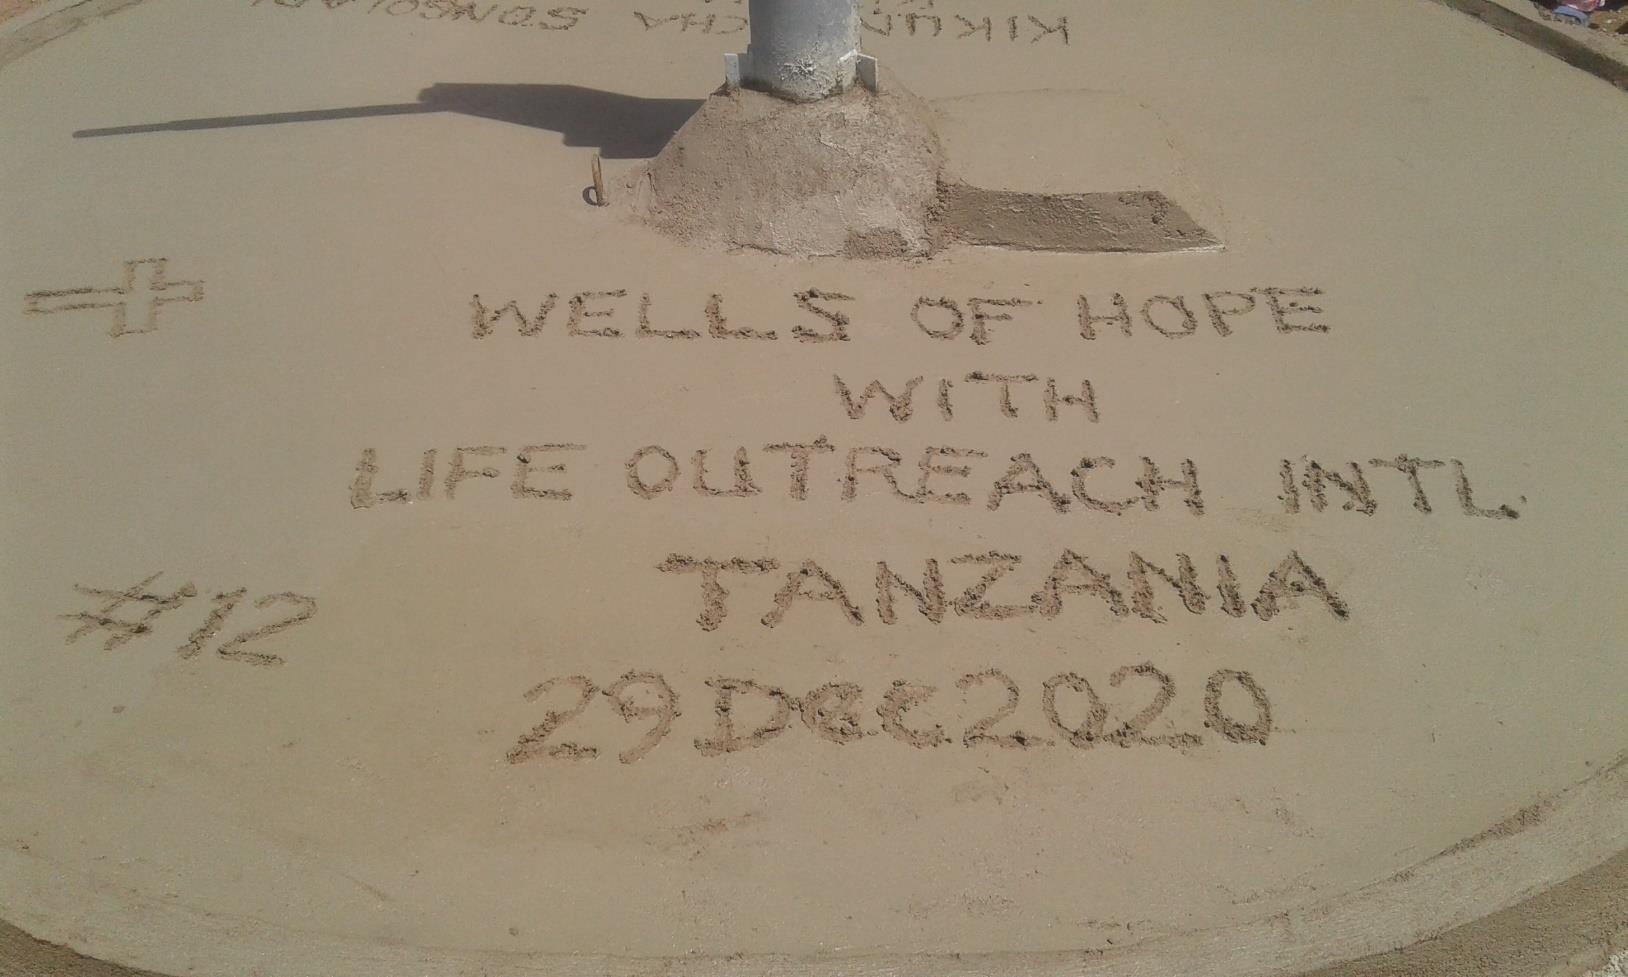 Tanzania 2020 - LOI Well # 12_1-61_1476395017